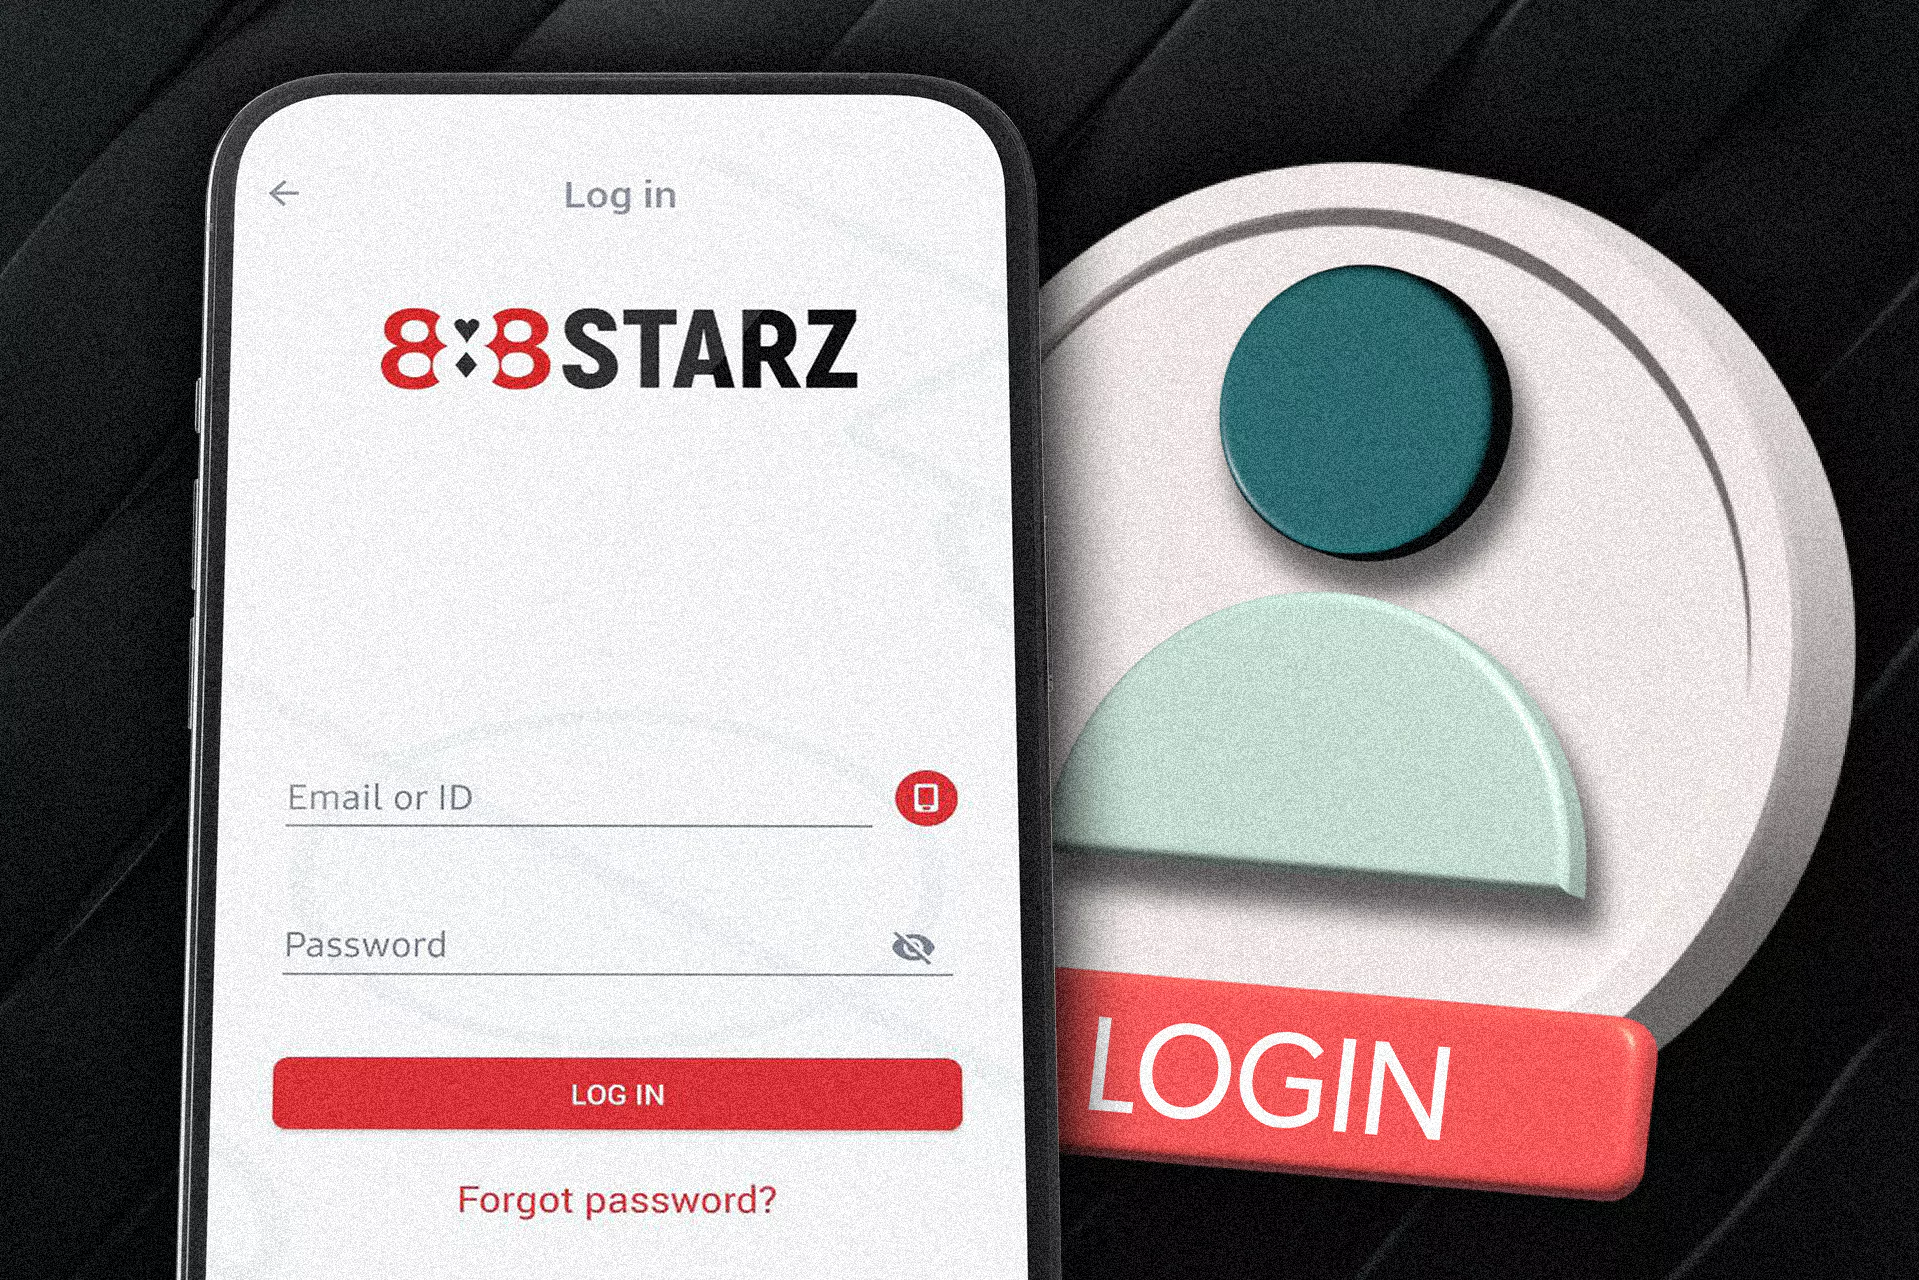 ऐप चलाने के बाद, आपको 888starz खाते में अपनी आईडी और पासवर्ड से लॉग इन करना चाहिए।